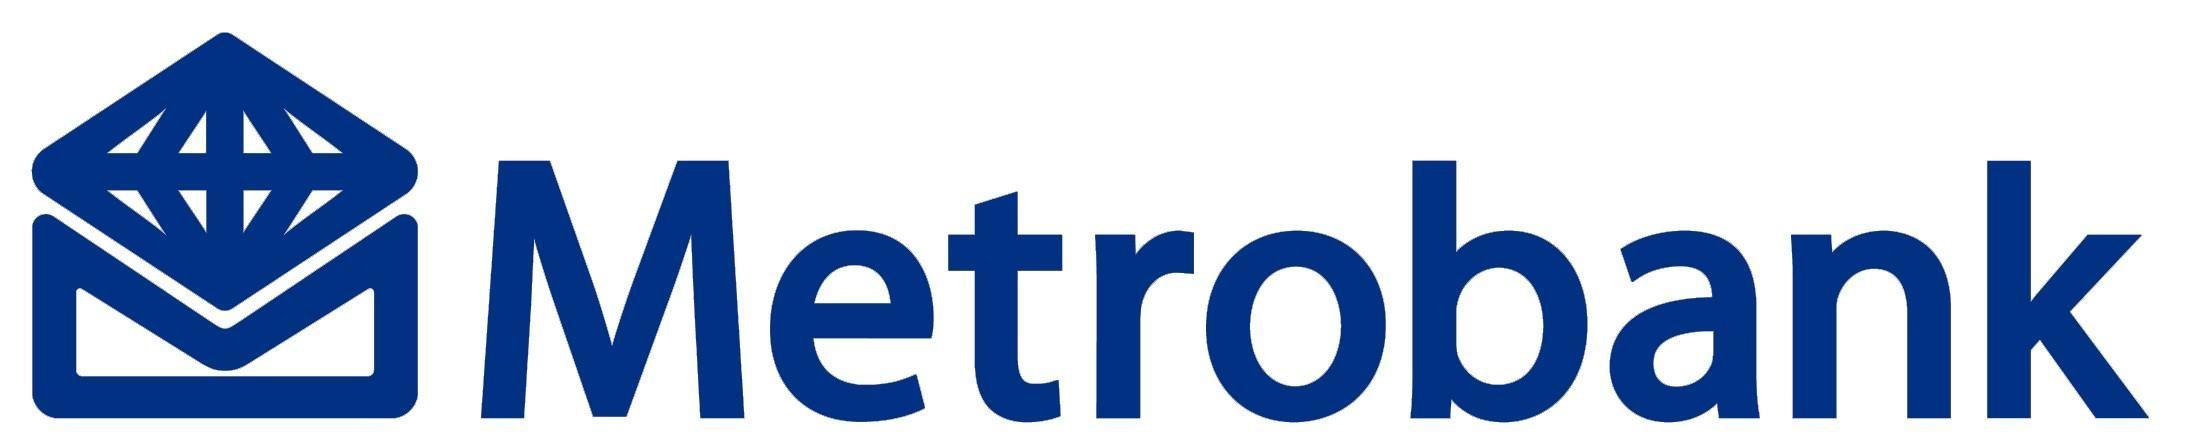 Metrobank Logo - Metrobank